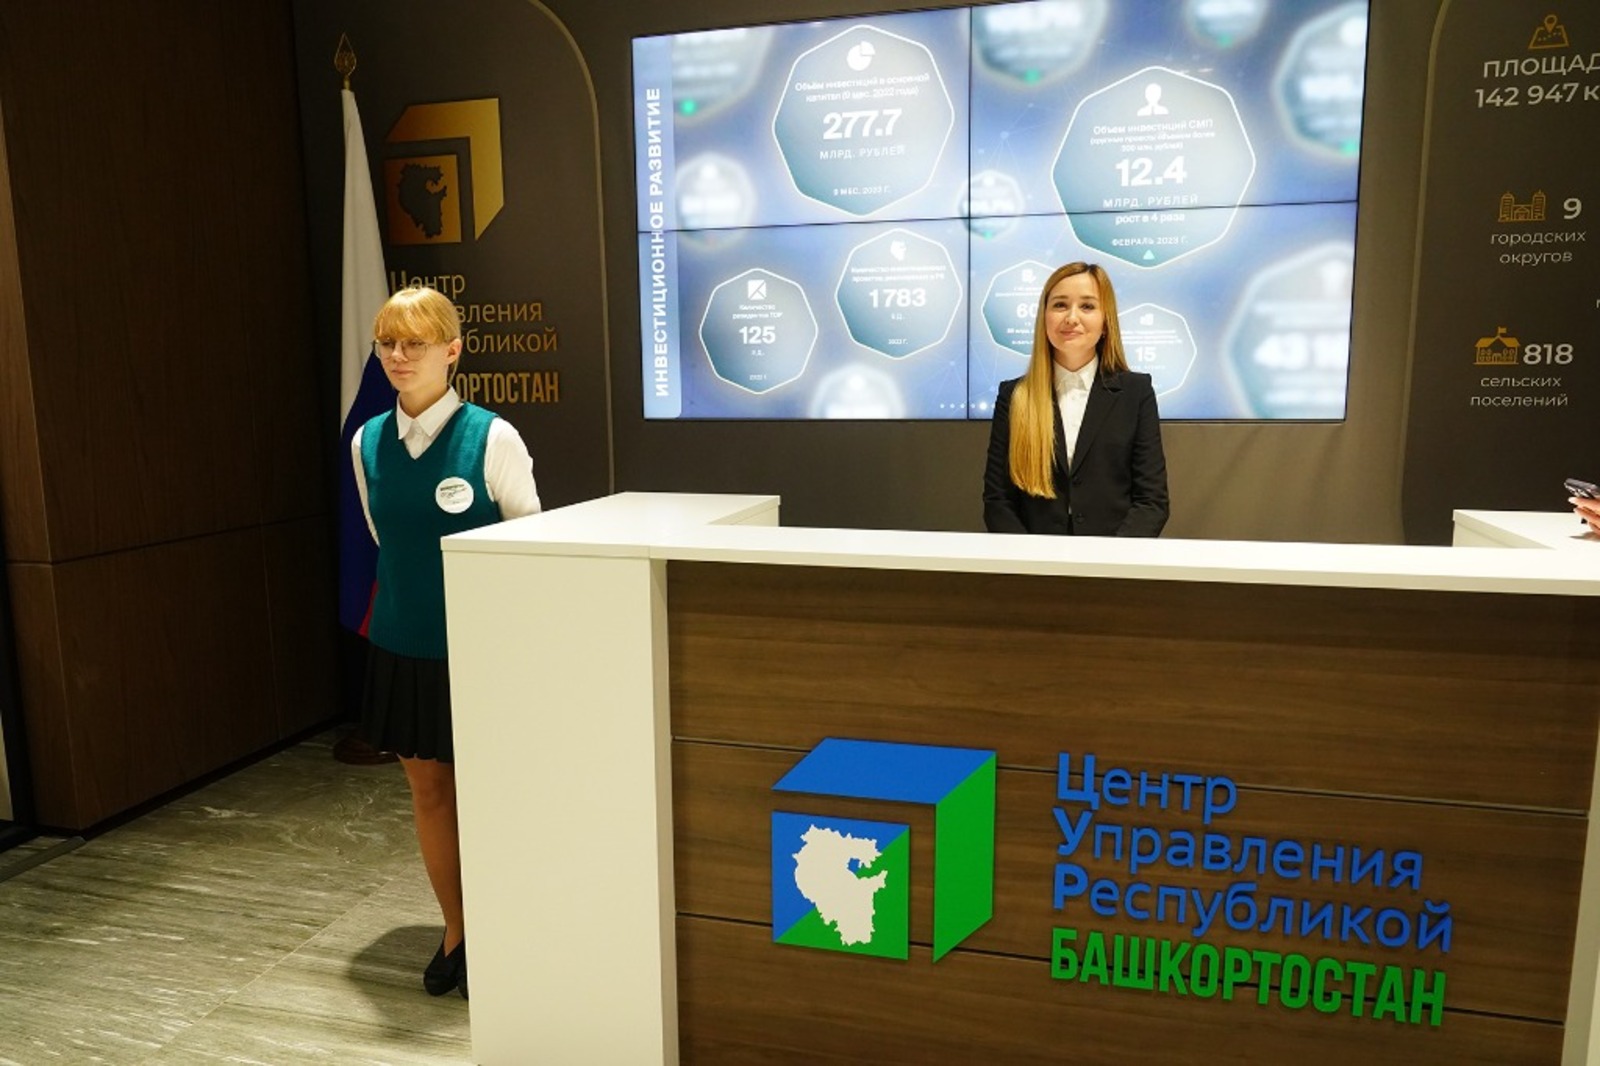 Центр управления Республикой Башкортостан - это эффективная командная работа